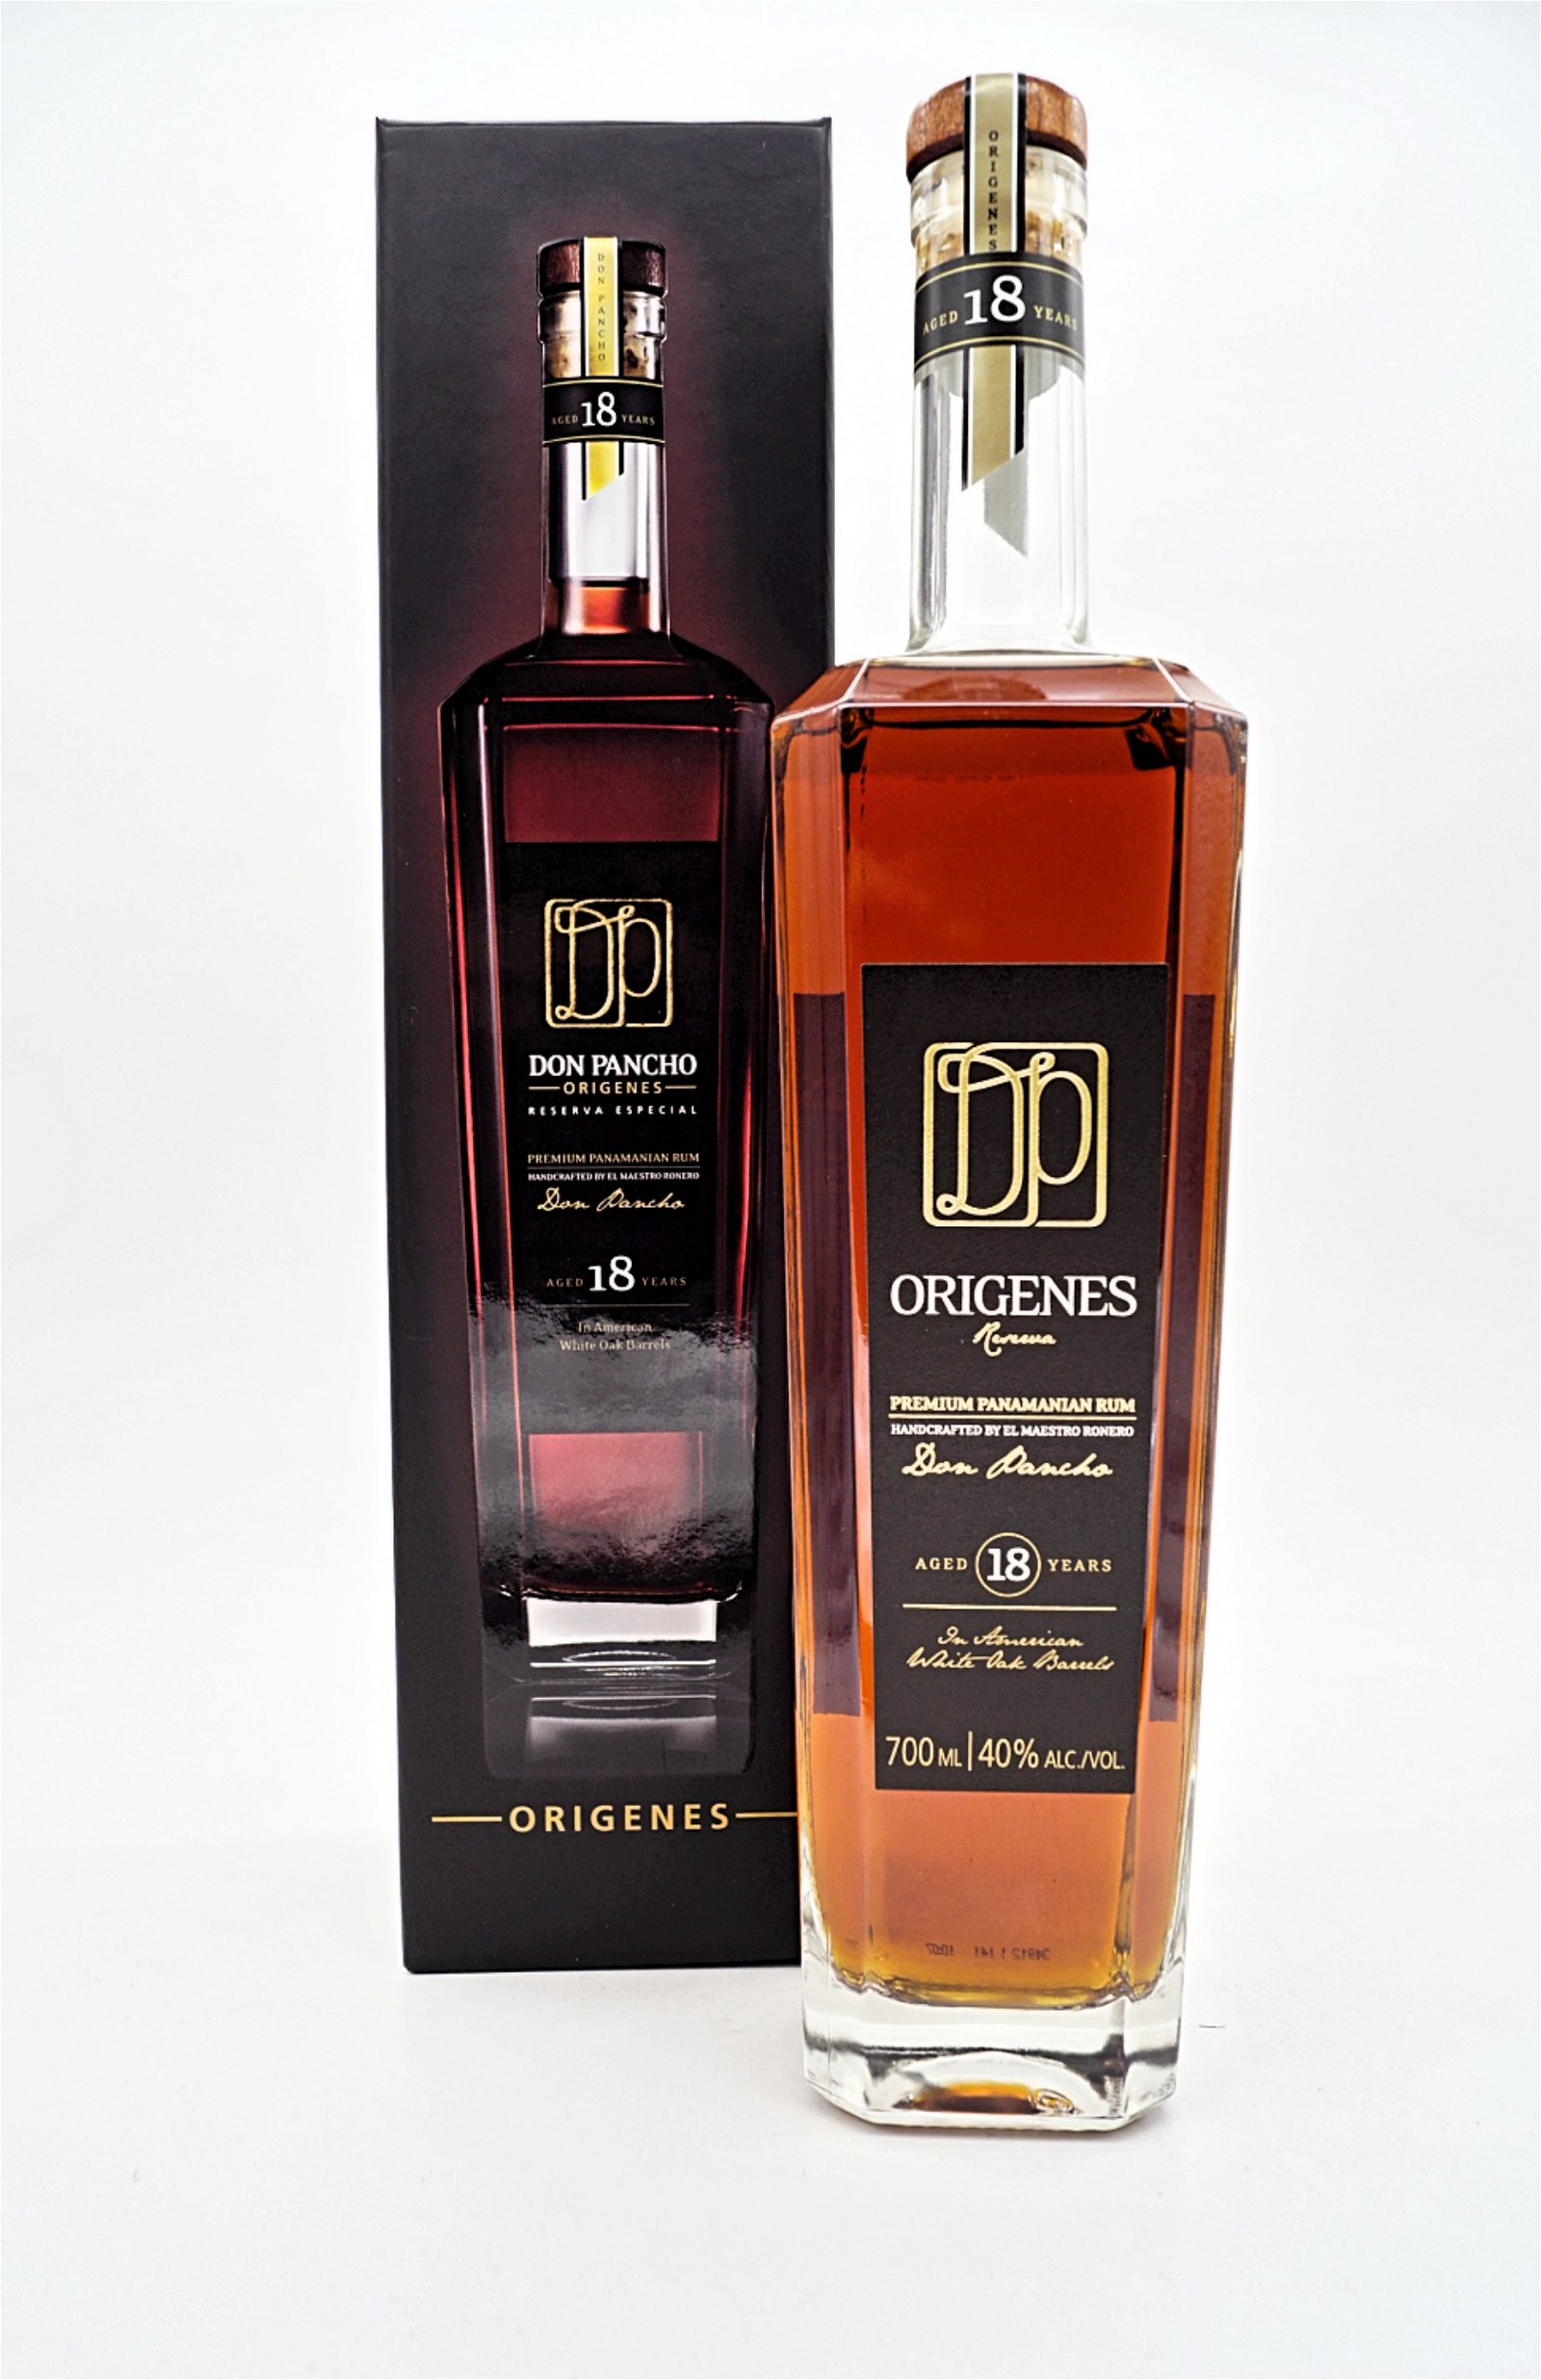 Origenes 18 Jahre Reserva Especial Premium Panamanian Rum